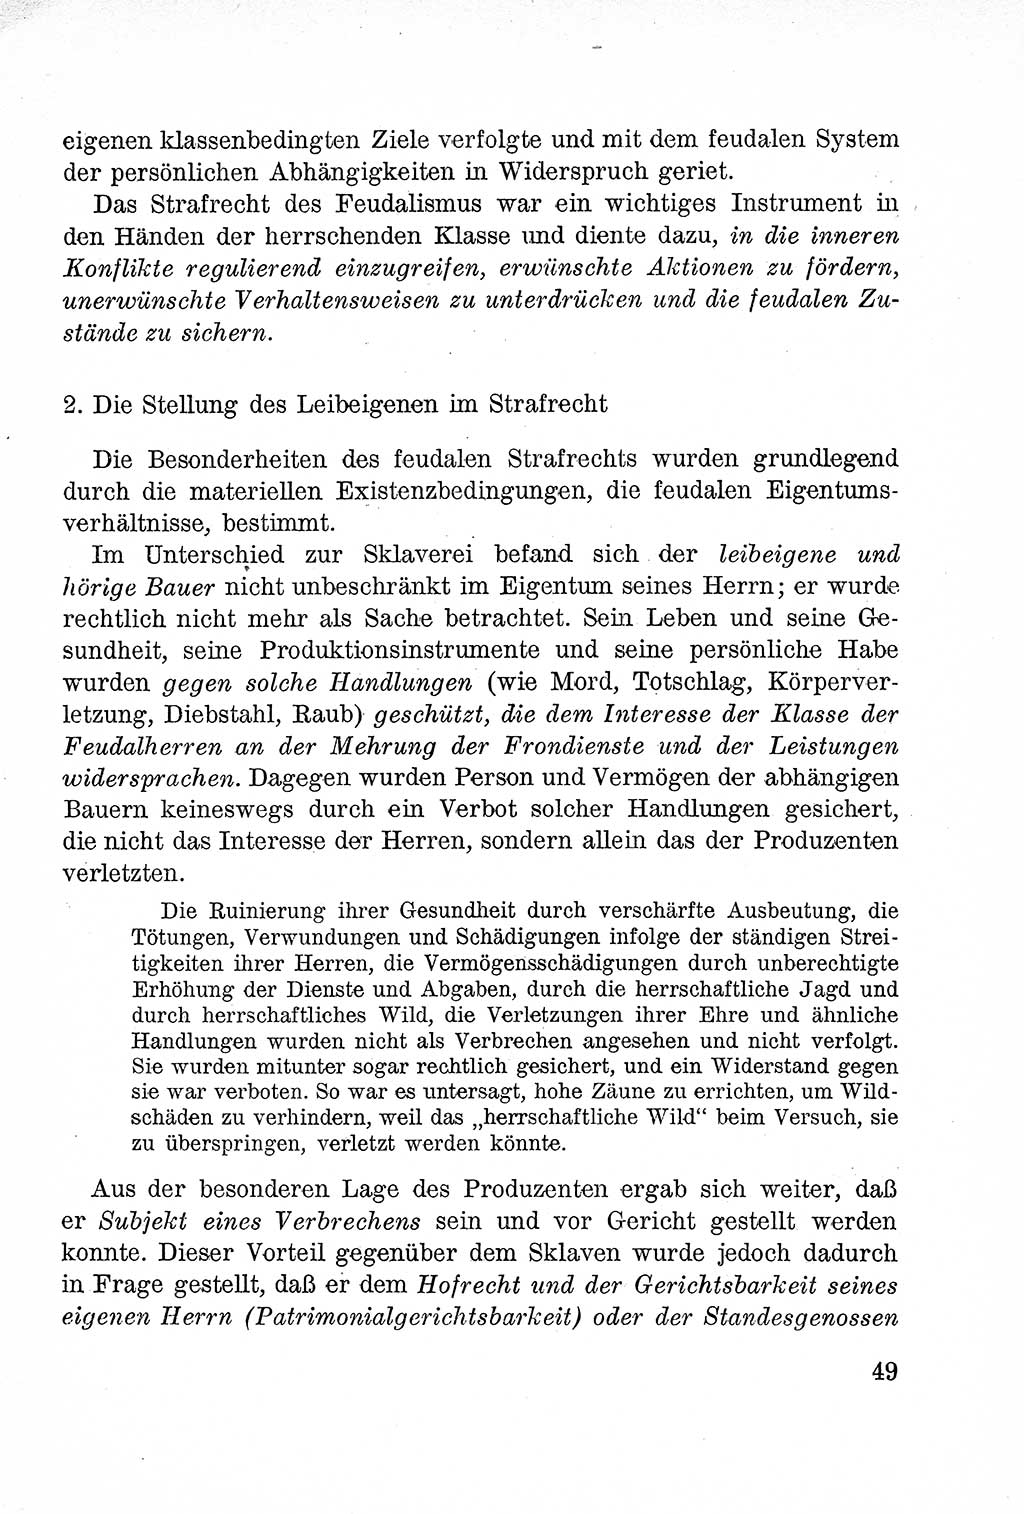 Lehrbuch des Strafrechts der Deutschen Demokratischen Republik (DDR), Allgemeiner Teil 1957, Seite 49 (Lb. Strafr. DDR AT 1957, S. 49)